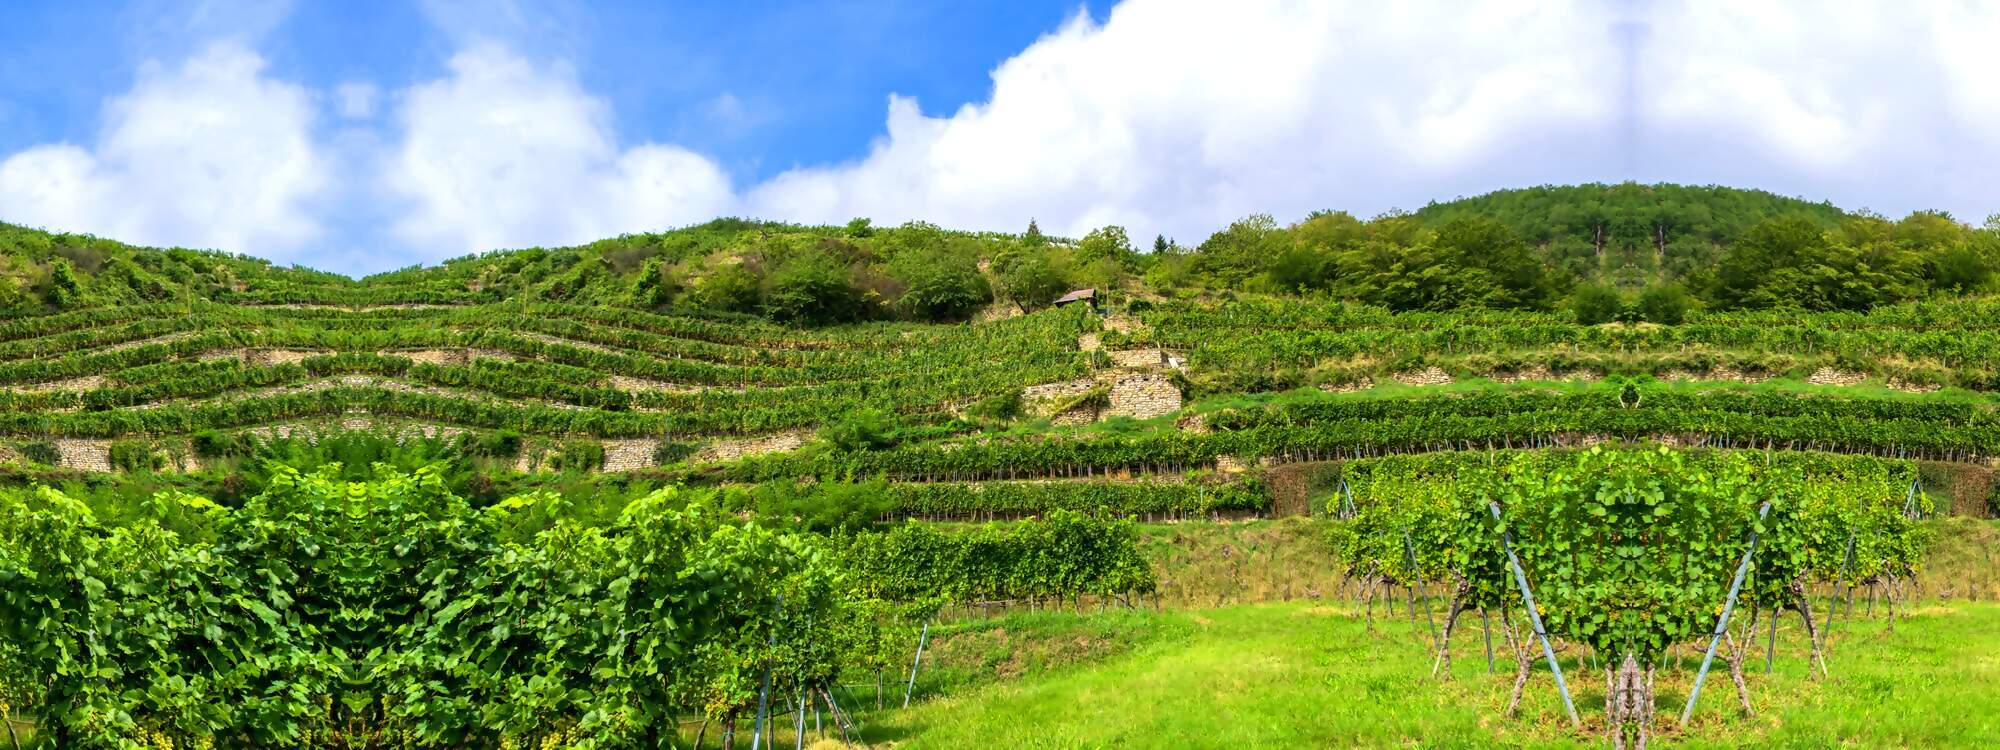 Wunderschoene Haenge mit Weinreben in der Wachau - Niederoesterreich